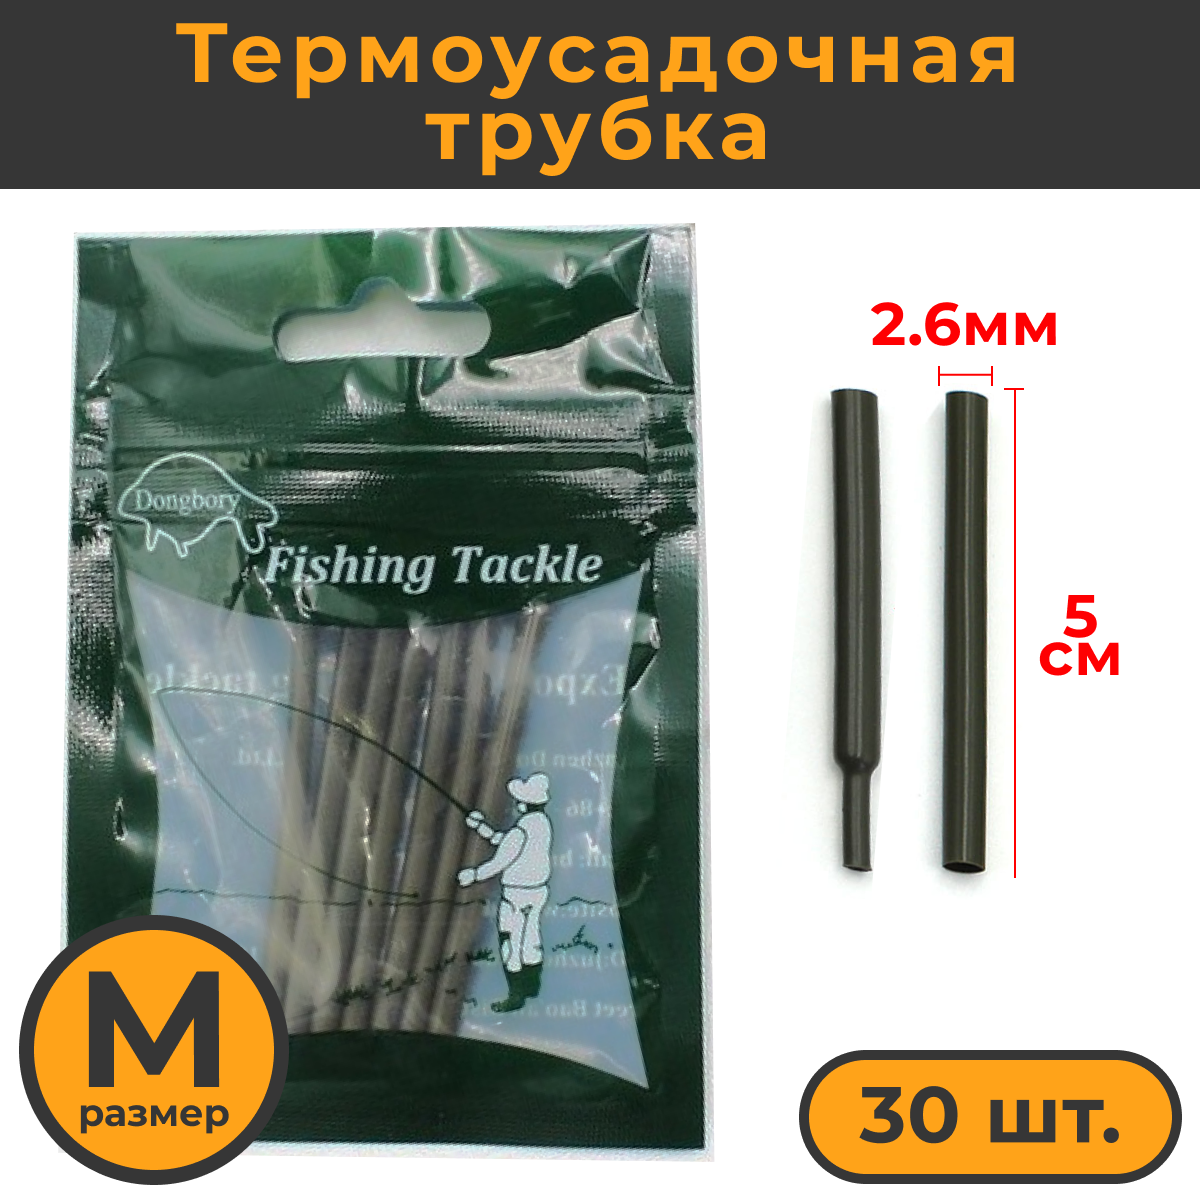 Термоусадка для карповых поводков 30шт, размер M (2,6мм) / Термоусадочная трубка рыболовная / термоусадочные трубки для рыбалки / Кембрики рыболовные